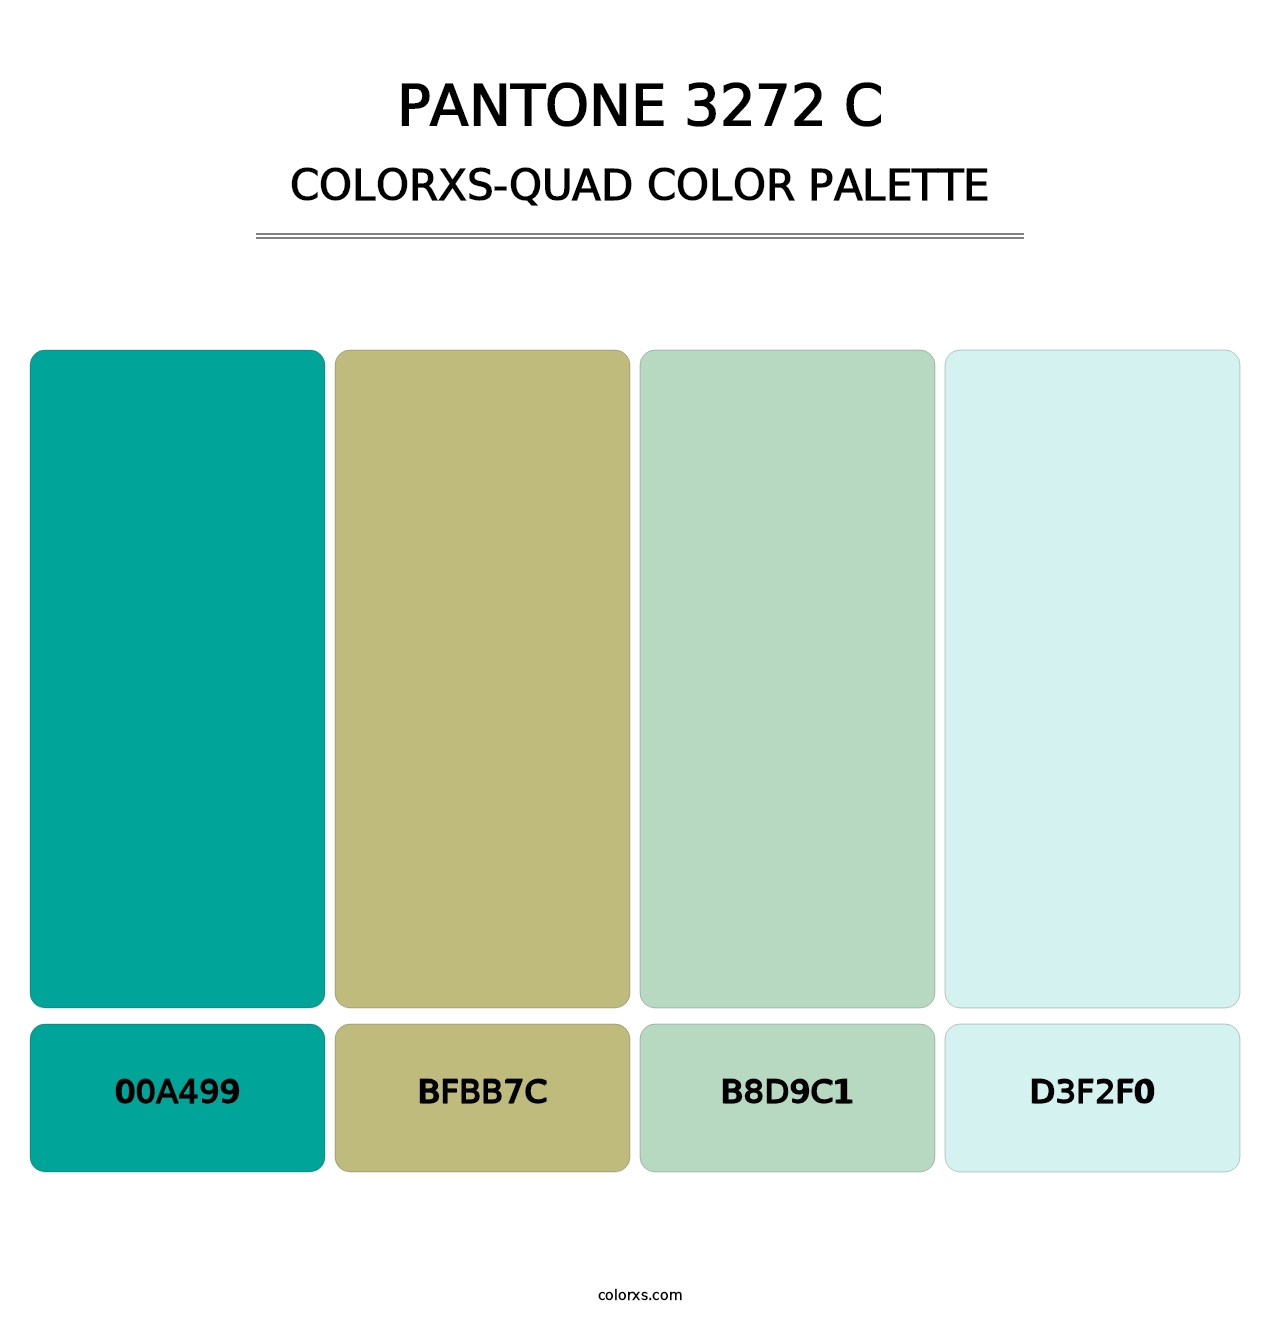 PANTONE 3272 C - Colorxs Quad Palette